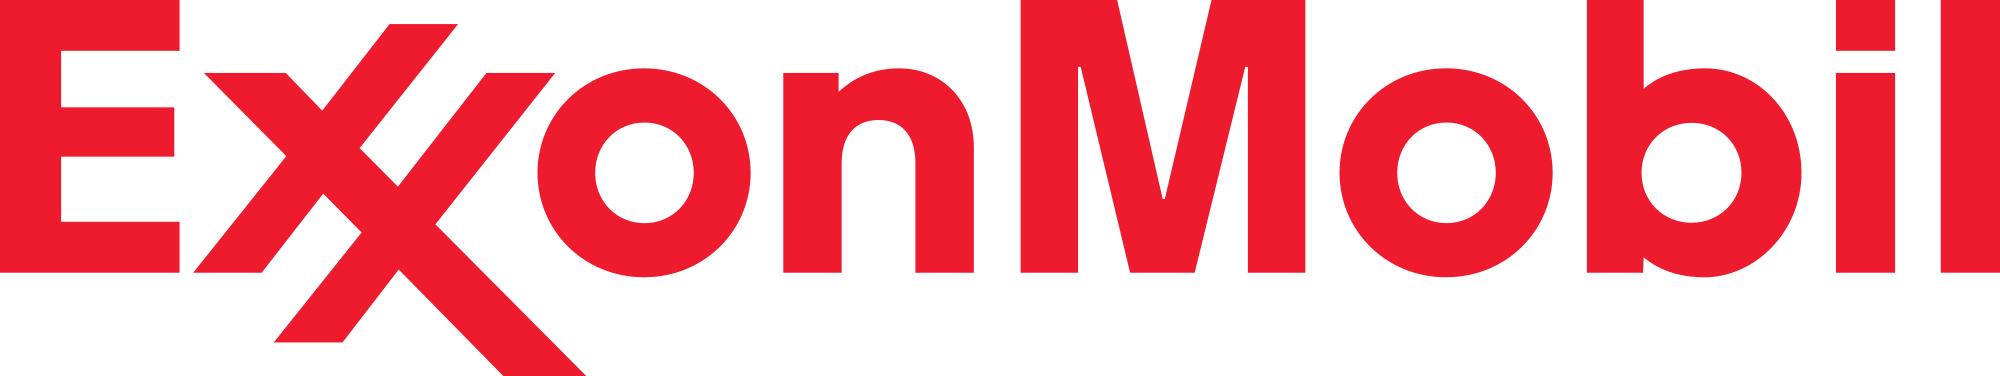 Exxon-Mobil logo